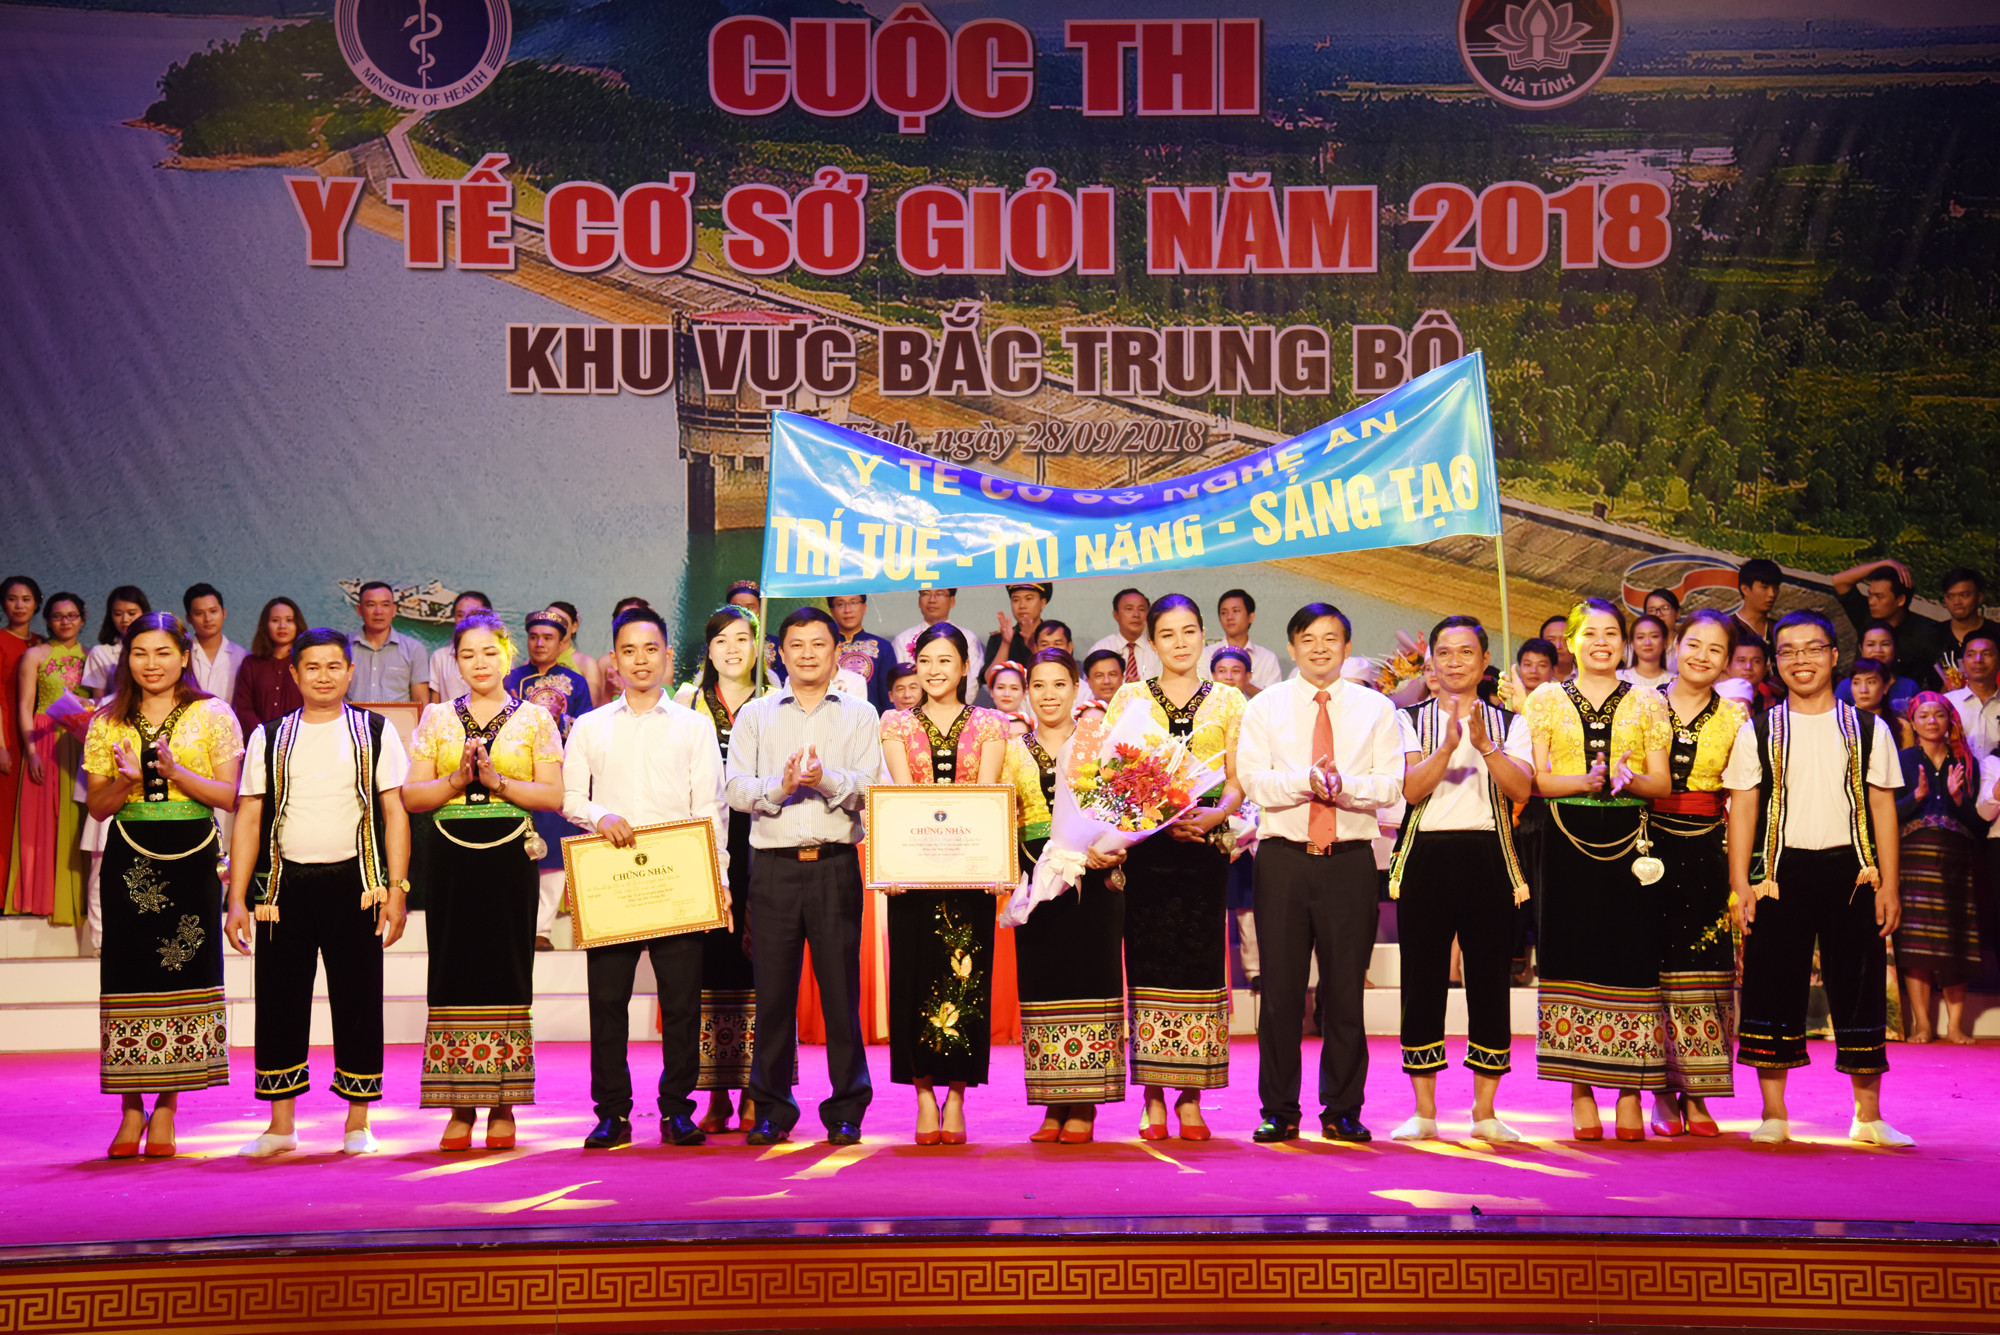 Đội thi y tế cơ sở giỏi huyện Quỳ Châu giành giải Nhất hội thi khu vực Bắc Trung bộ. Ảnh: Từ Thành